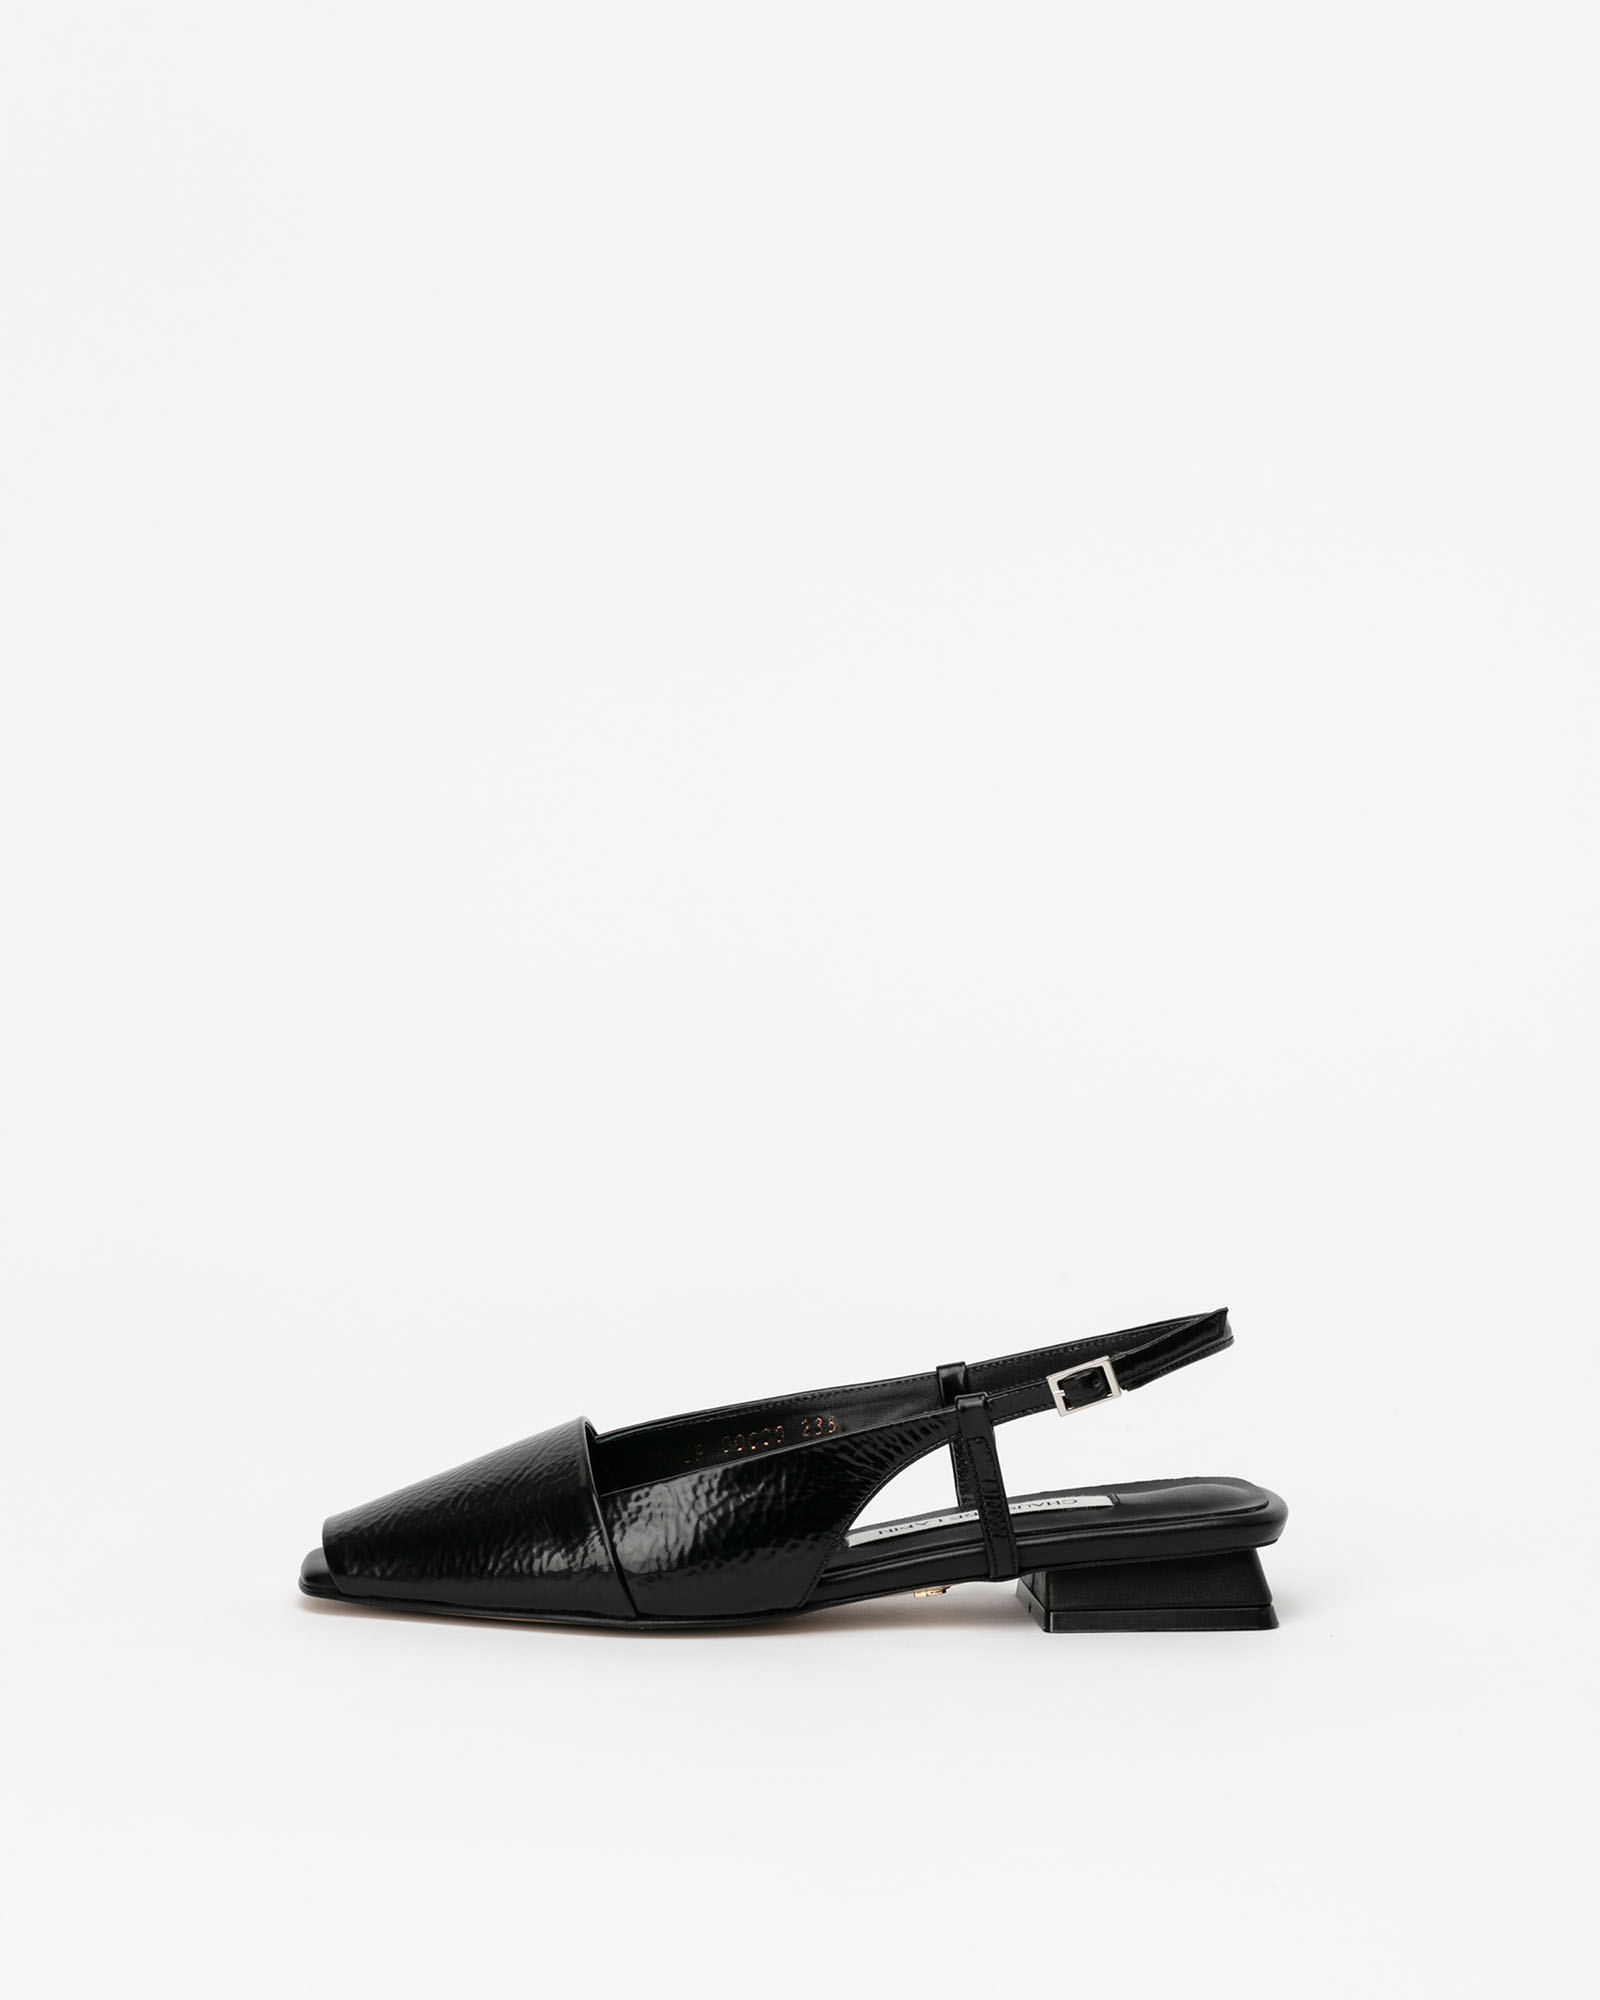 Hardtack Slingback Flat Shoes in Wrinkled Black Box